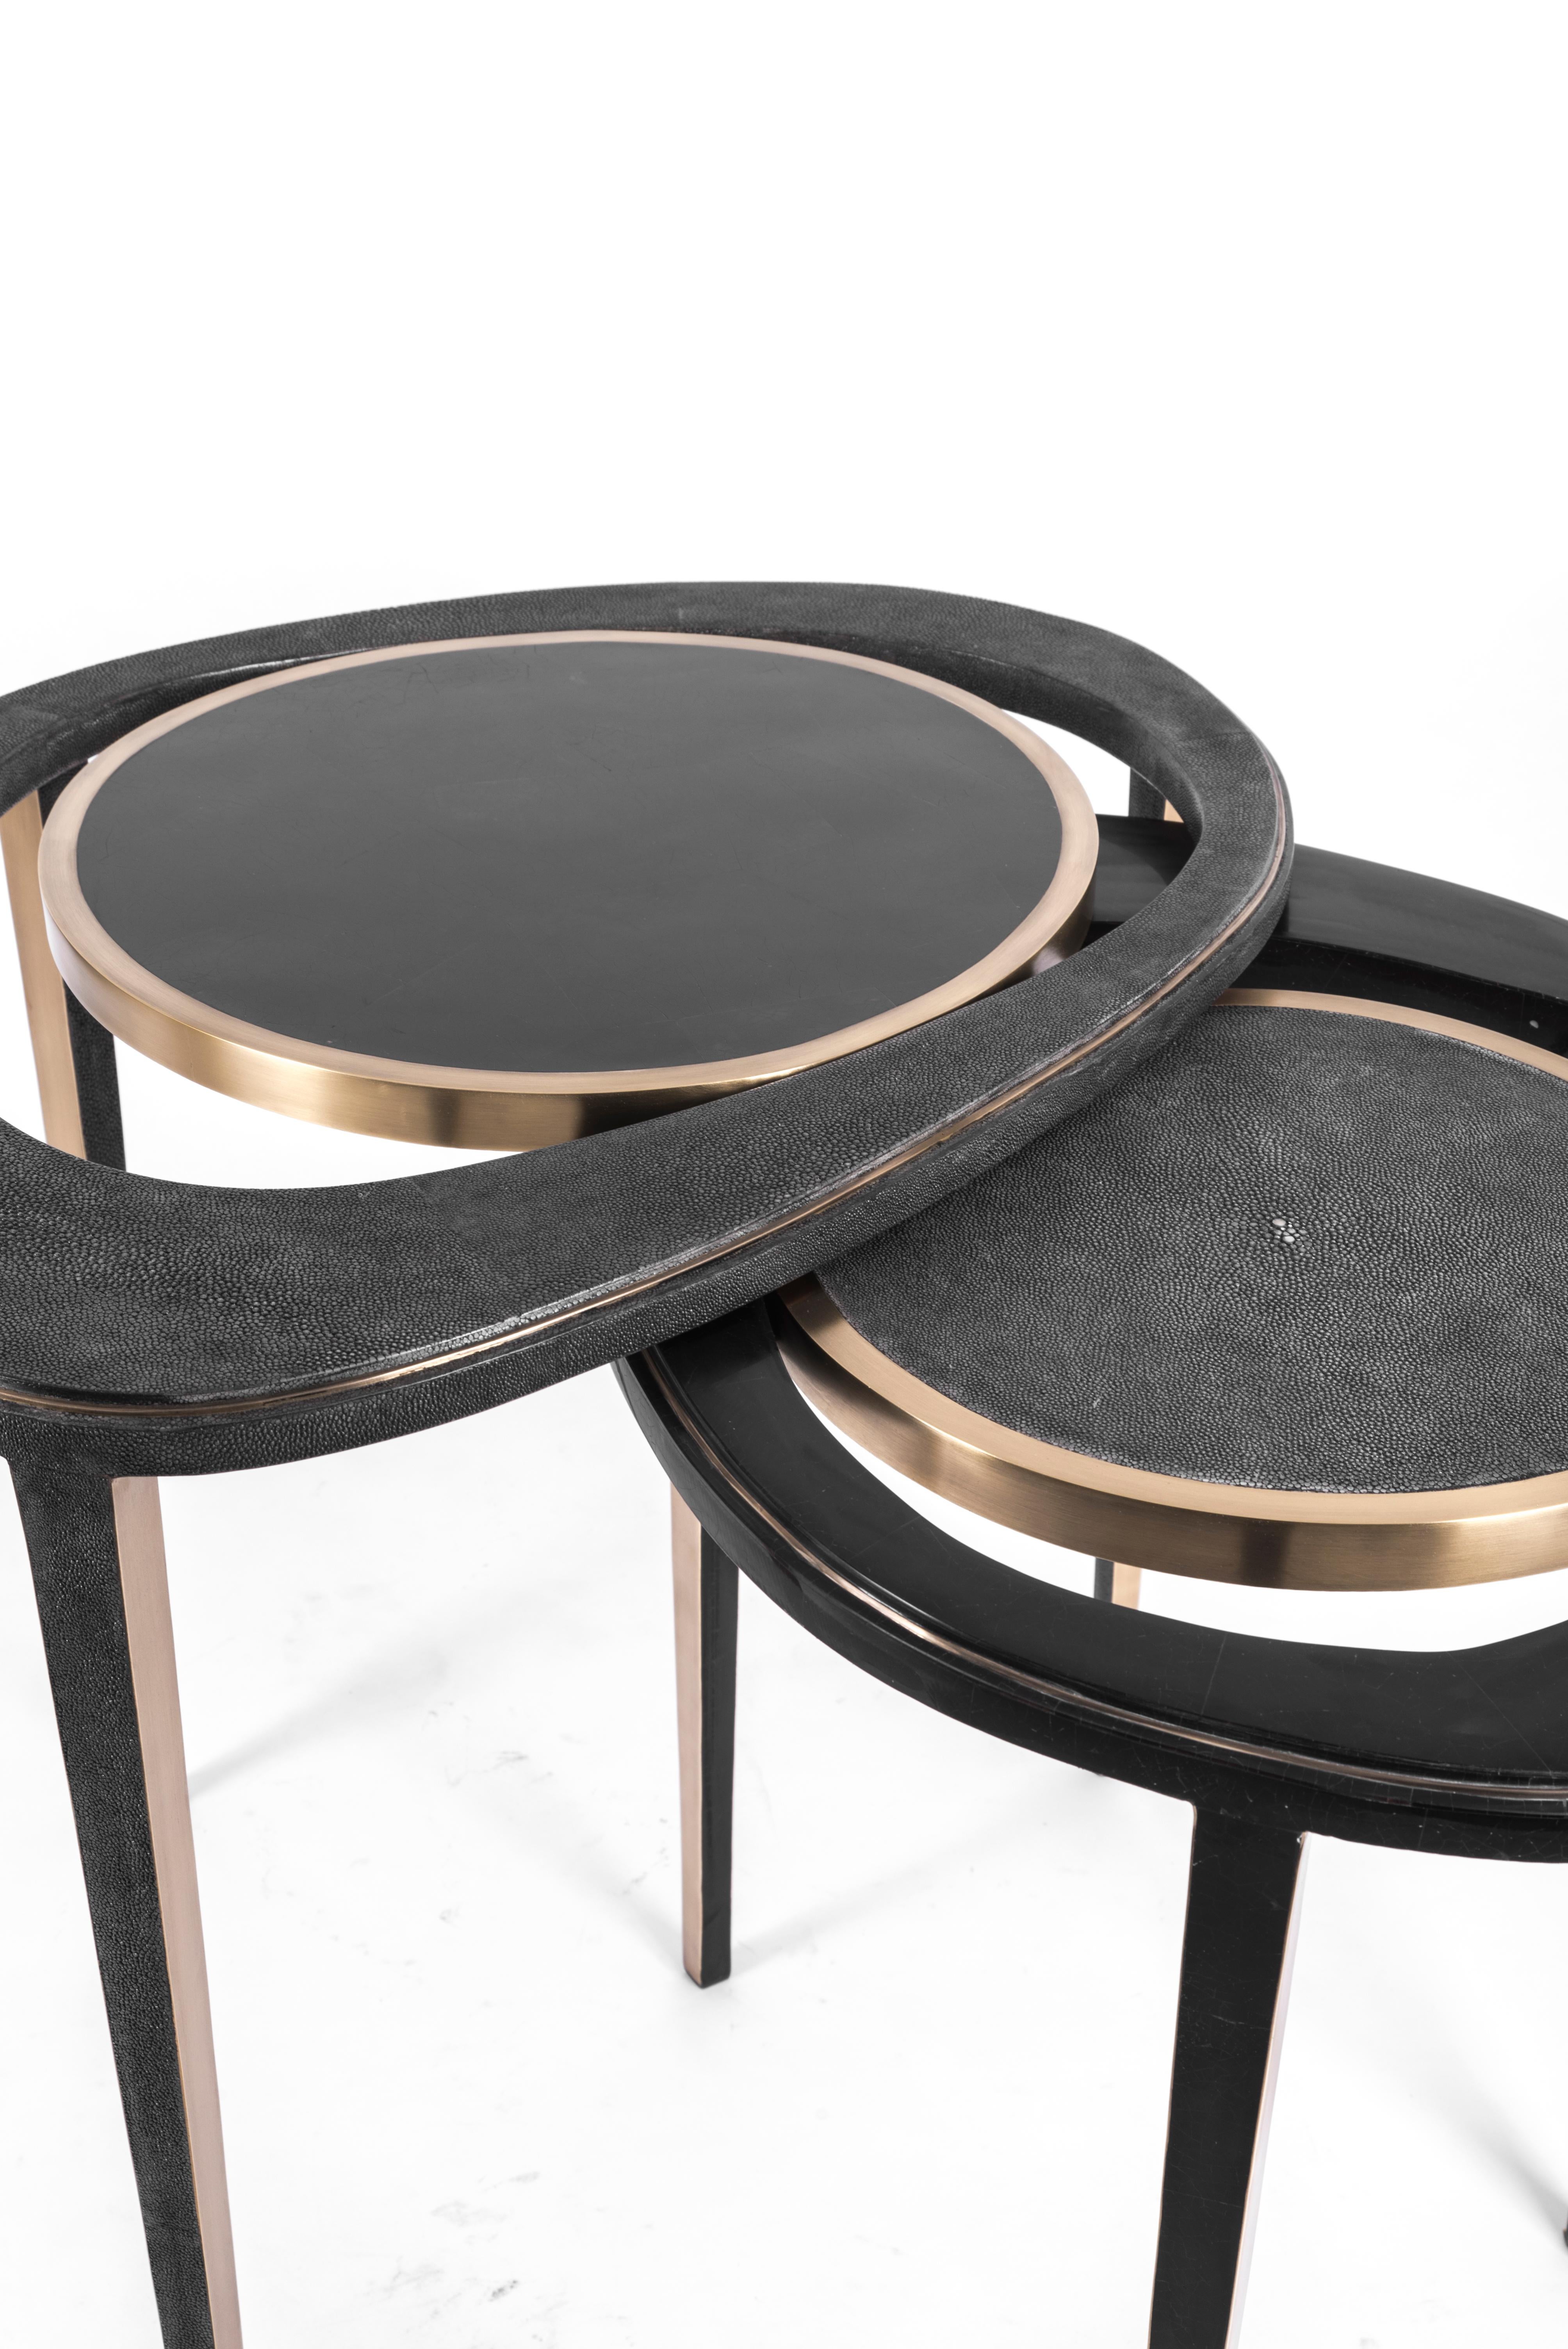 Le set de 2 tables d'appoint gigognes en forme de paon est une pièce emblématique de R&Y Augousti et l'une de ses premières créations. La pièce est minimaliste et sculpturale, et s'inspire bien sûr de la forme des plumes de paon exotiques. La pièce